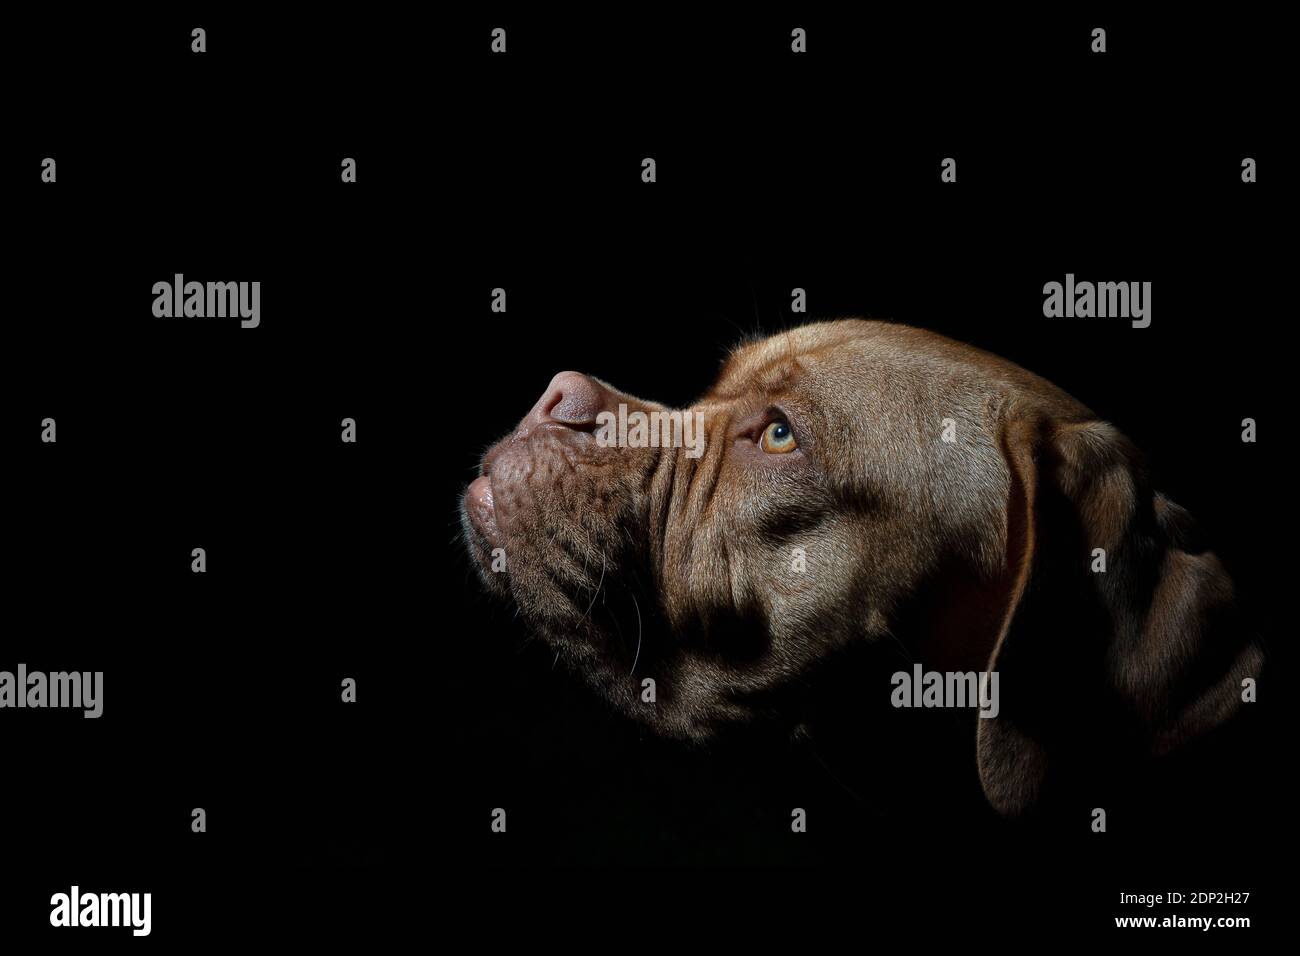 Una foto ritratto di Mabel, un Dogue de Bordeaux (Mastiff francese) di un anno, girato all'esterno in condizioni di scarsa illuminazione con un flash di riempimento della fotocamera. Foto Stock